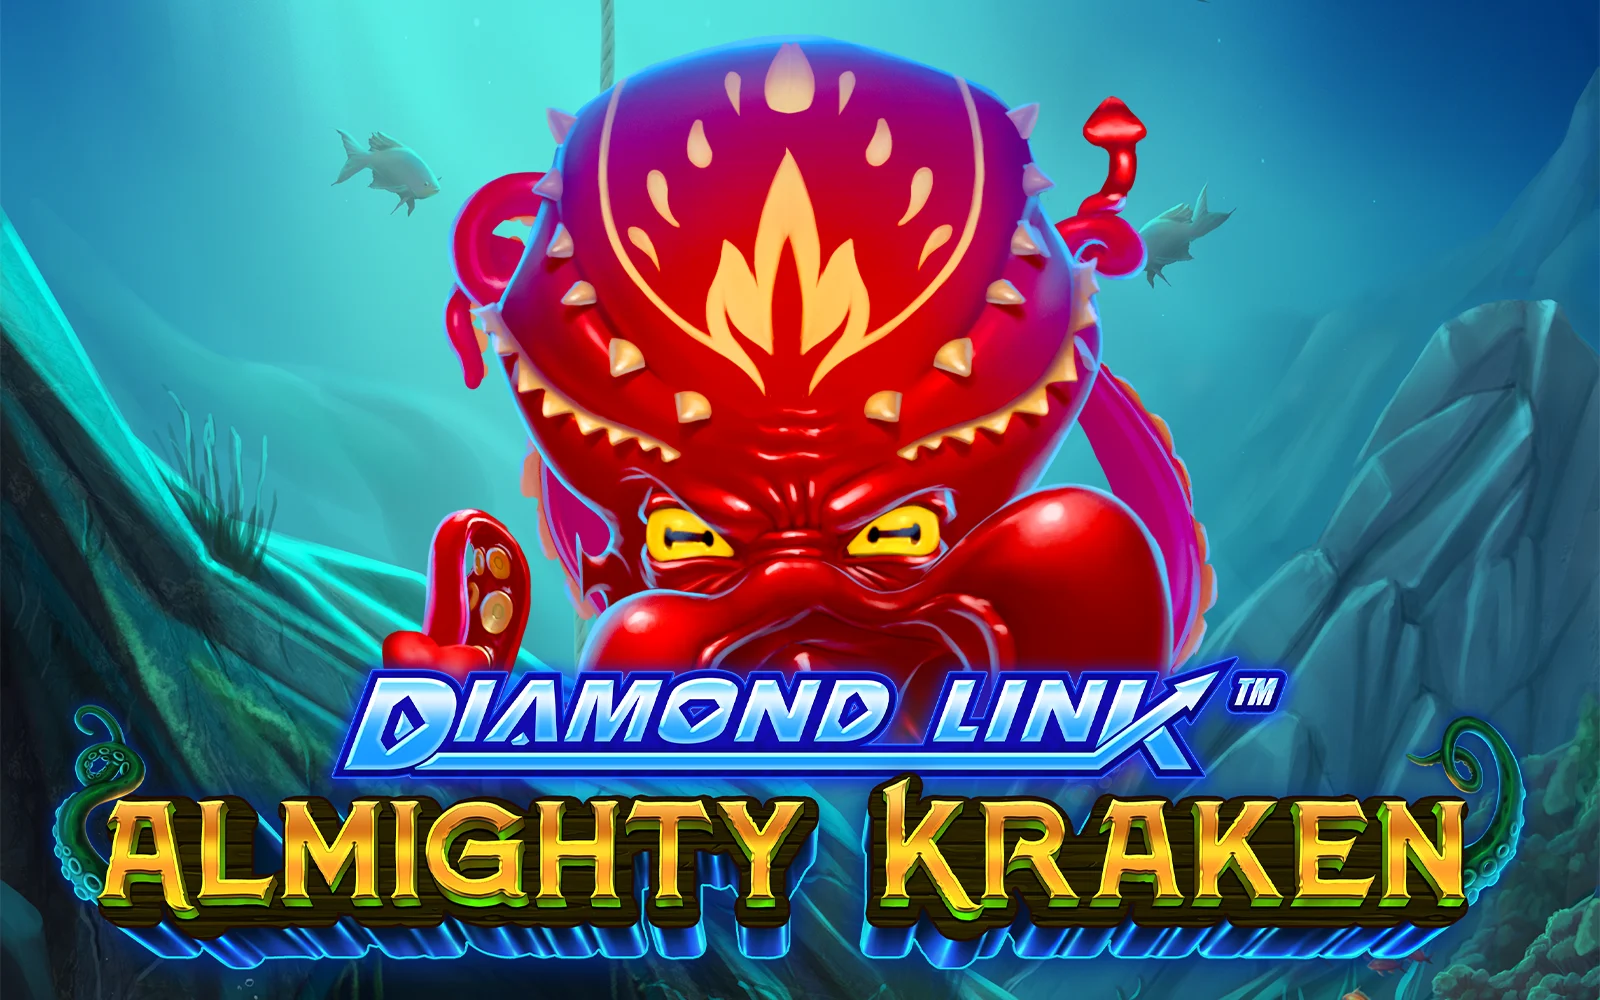 Speel Diamond Link™ : Almighty Kraken op Starcasino.be online casino